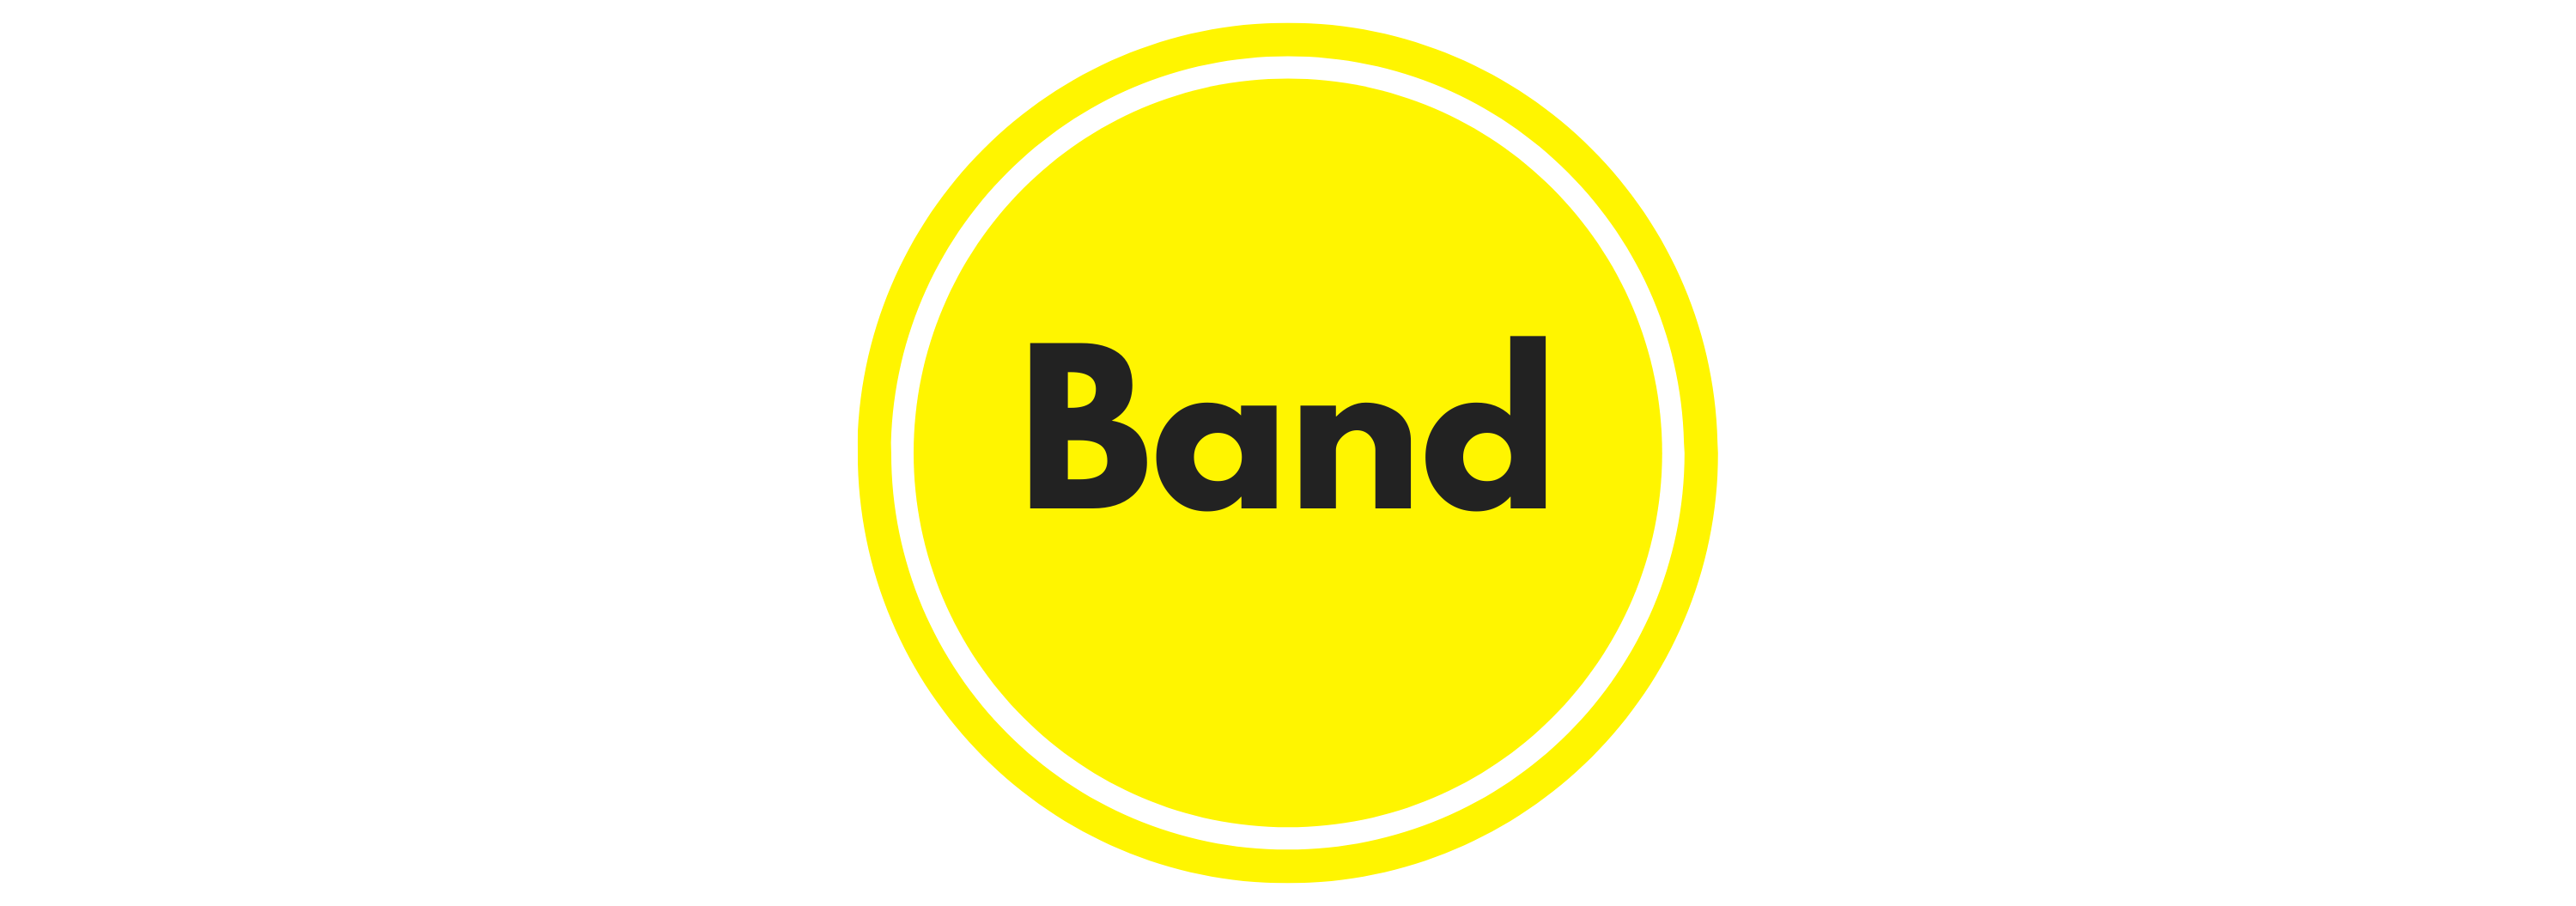 Band